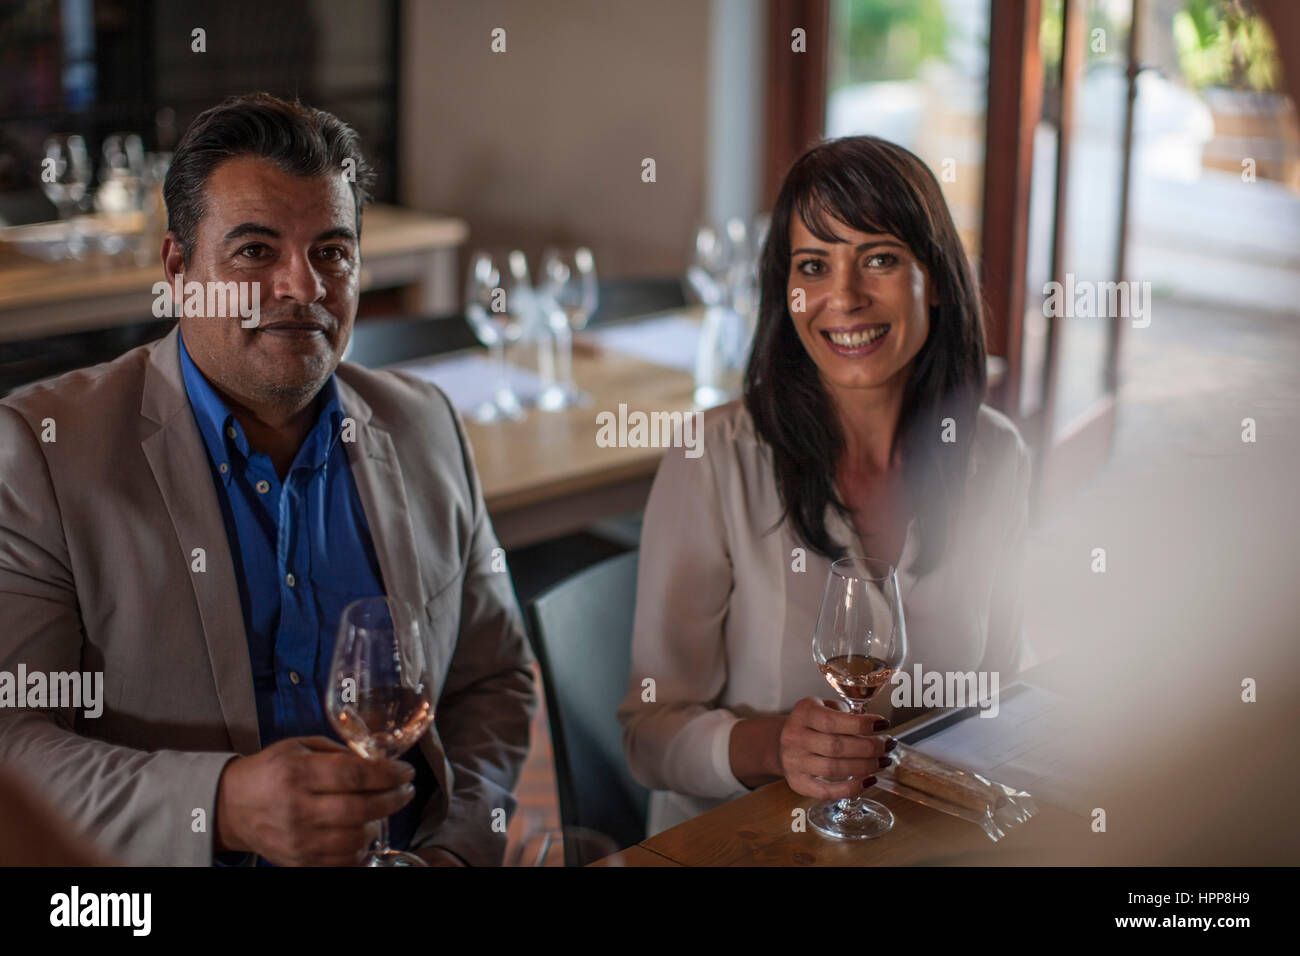 Porträt von lächelnden Mann und Frau mit Weingläsern Stockfoto